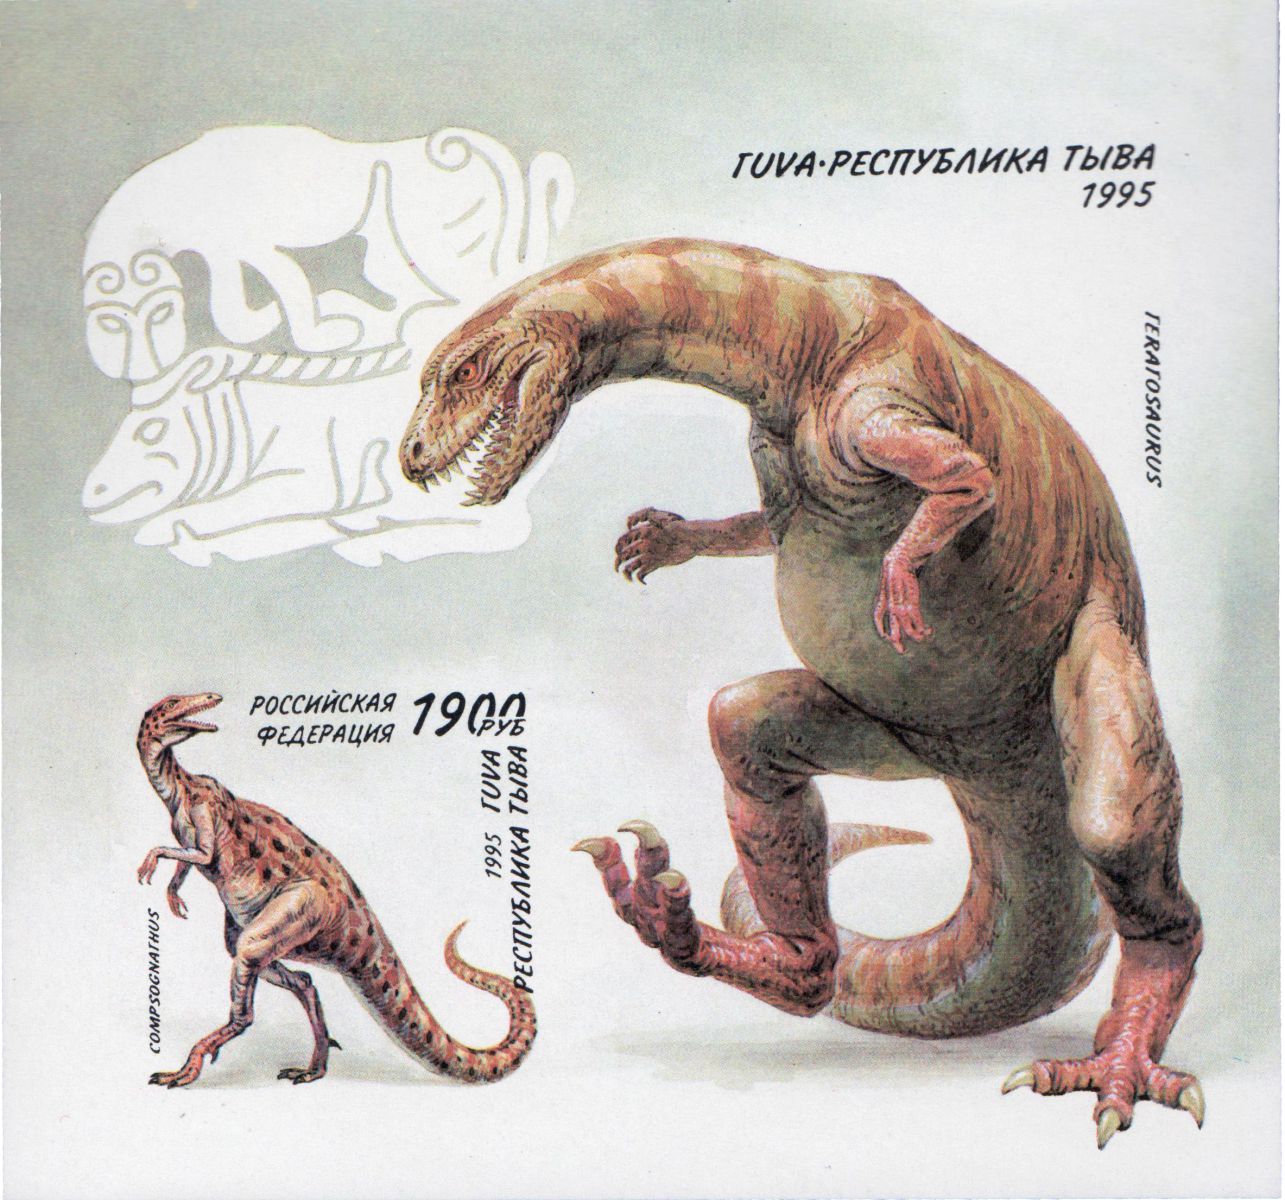 Тува Фальсификат почтовая марка 1995 динозавр без перфорации подделка